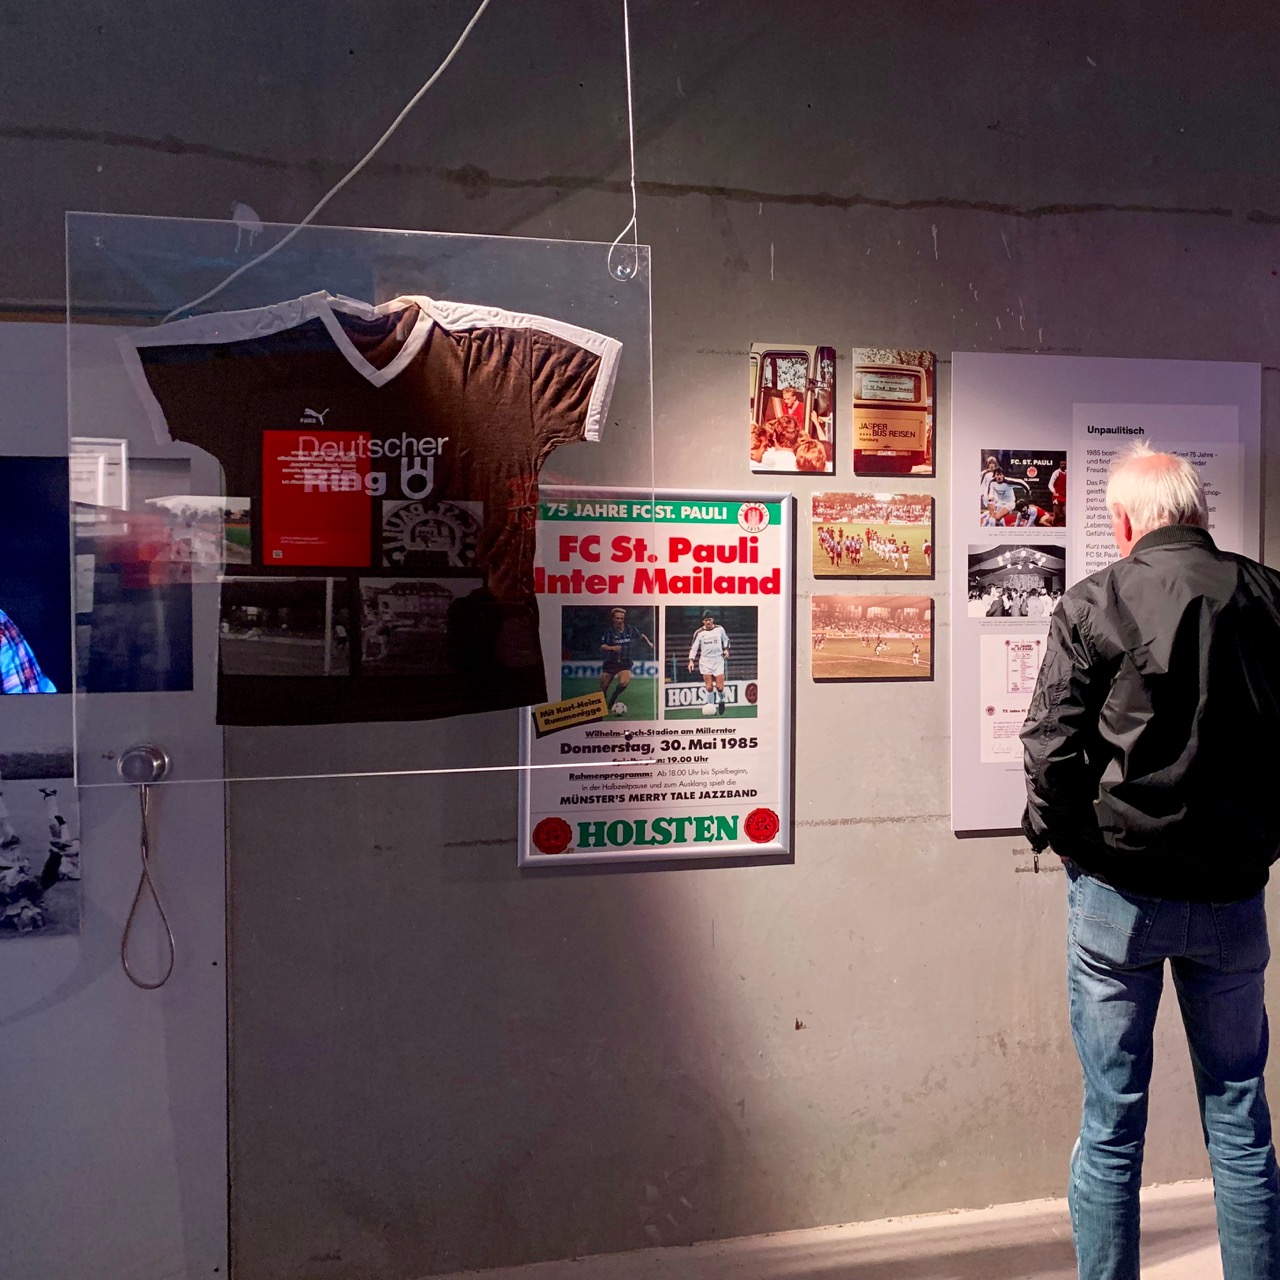 In der KIEZBEBEN-Ausstellung sind viele Erinnerungen an das Mailand-Spiel zu sehen – u.a. das Originalplakat, seltene Fotos und Trikots aus einer Zeit, in der der FC St. Pauli noch nicht „Kult“ war.